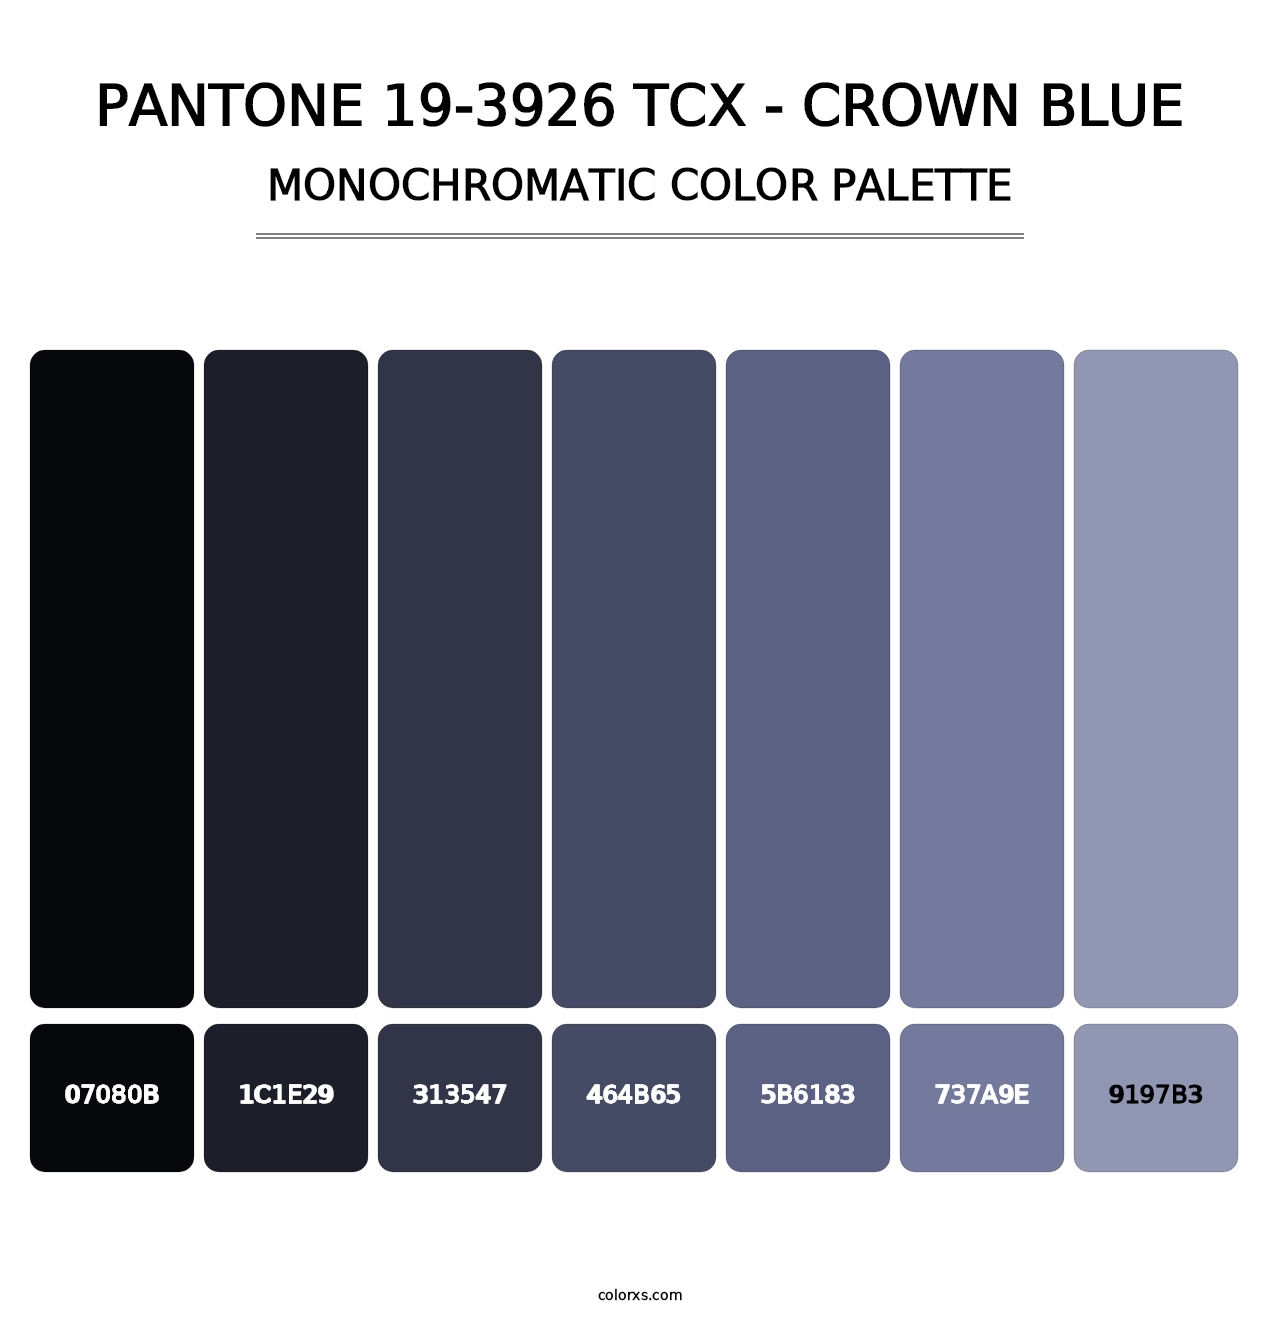 PANTONE 19-3926 TCX - Crown Blue - Monochromatic Color Palette